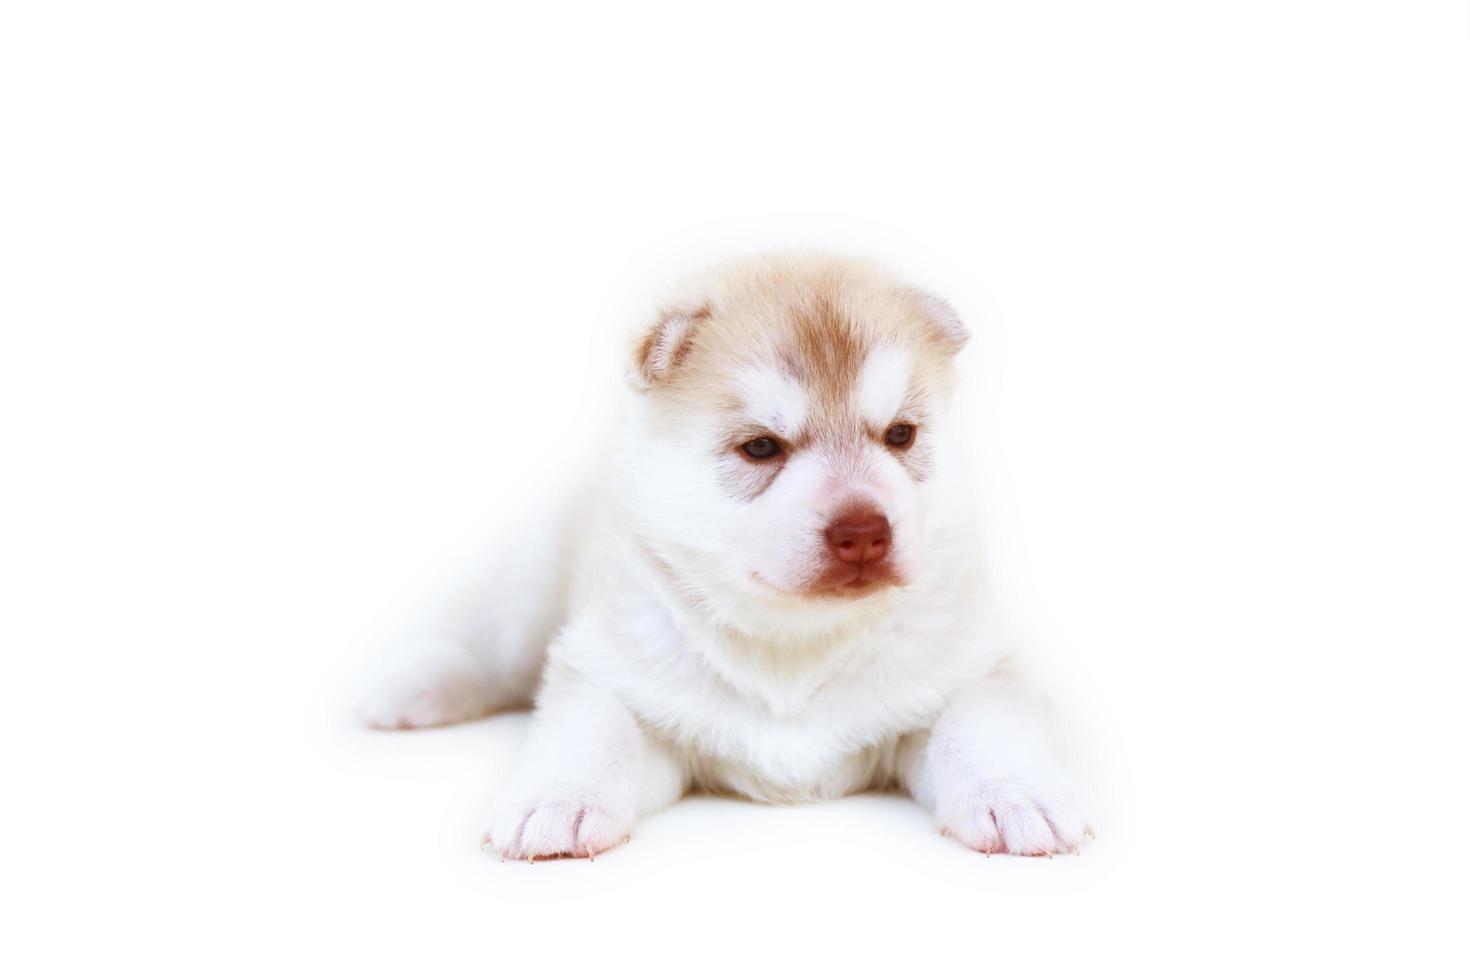 Cachorro de husky siberiano recién nacido colores rojo claro y blanco acostado sobre fondo blanco. Cachorro esponjoso recién nacido aislado sobre fondo blanco. foto